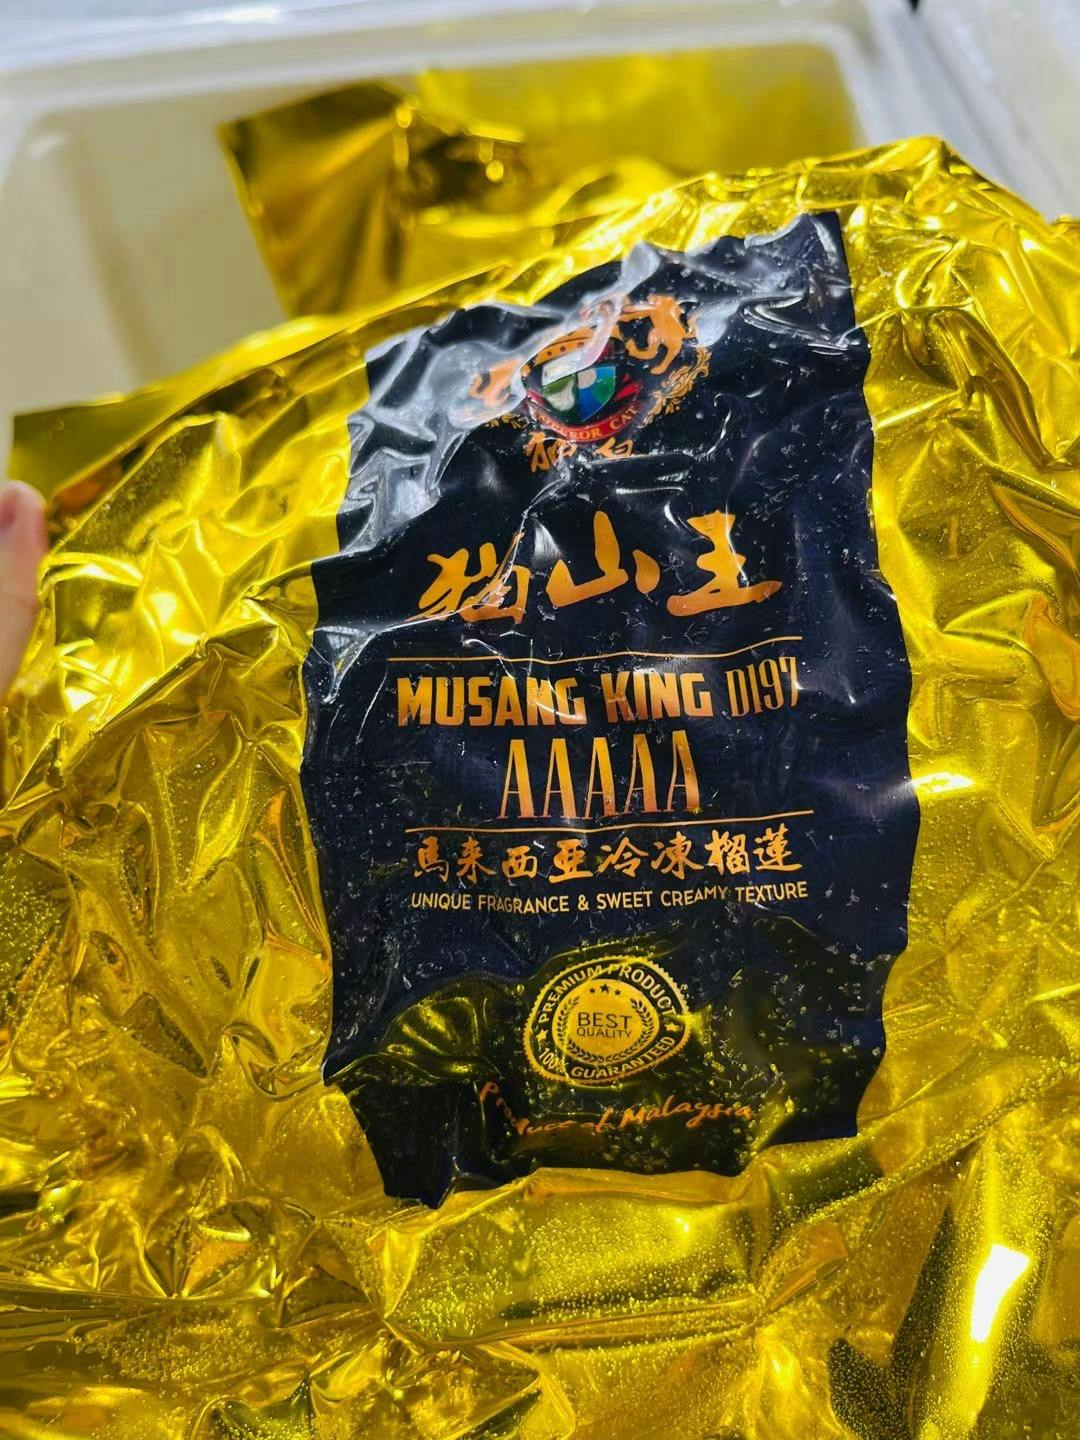 AAAAA D197 Musang King 马来西亚 冷冻 猫山王 榴莲 Durian 整颗 $16.99/lb『Limited』